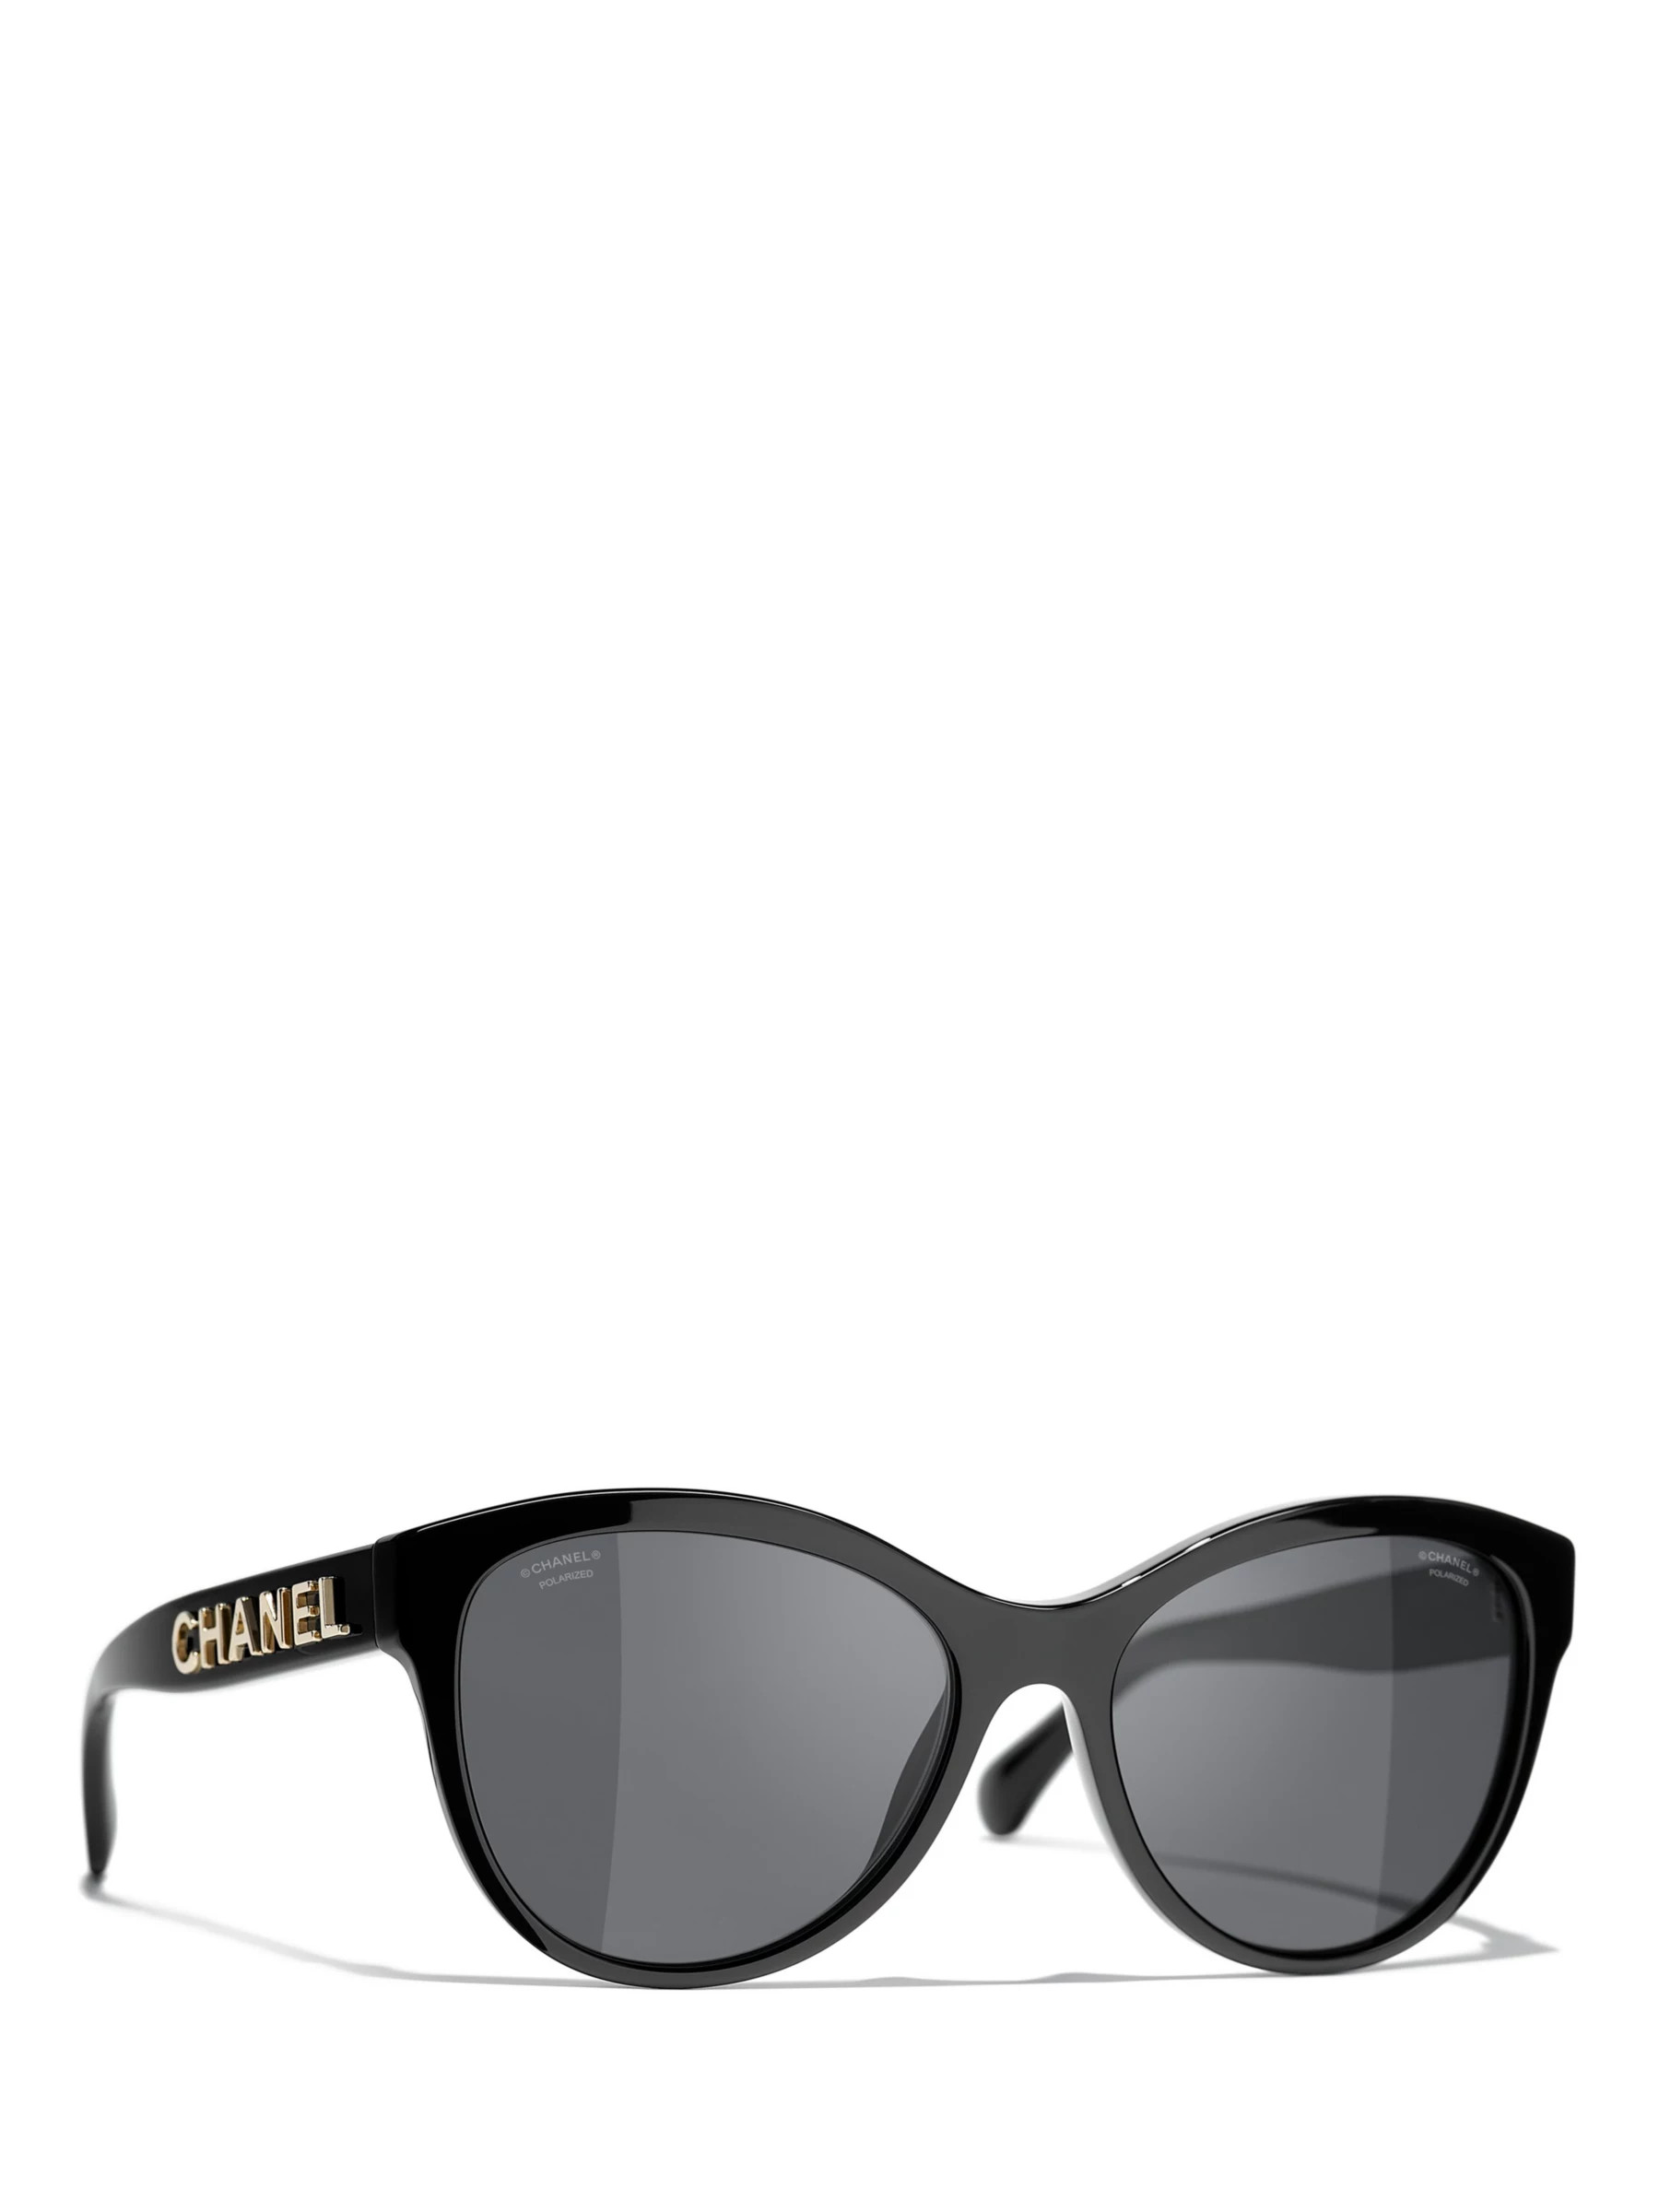 Chanel A71280 rectangle sunglasses Io for Sale in Miami FL  OfferUp